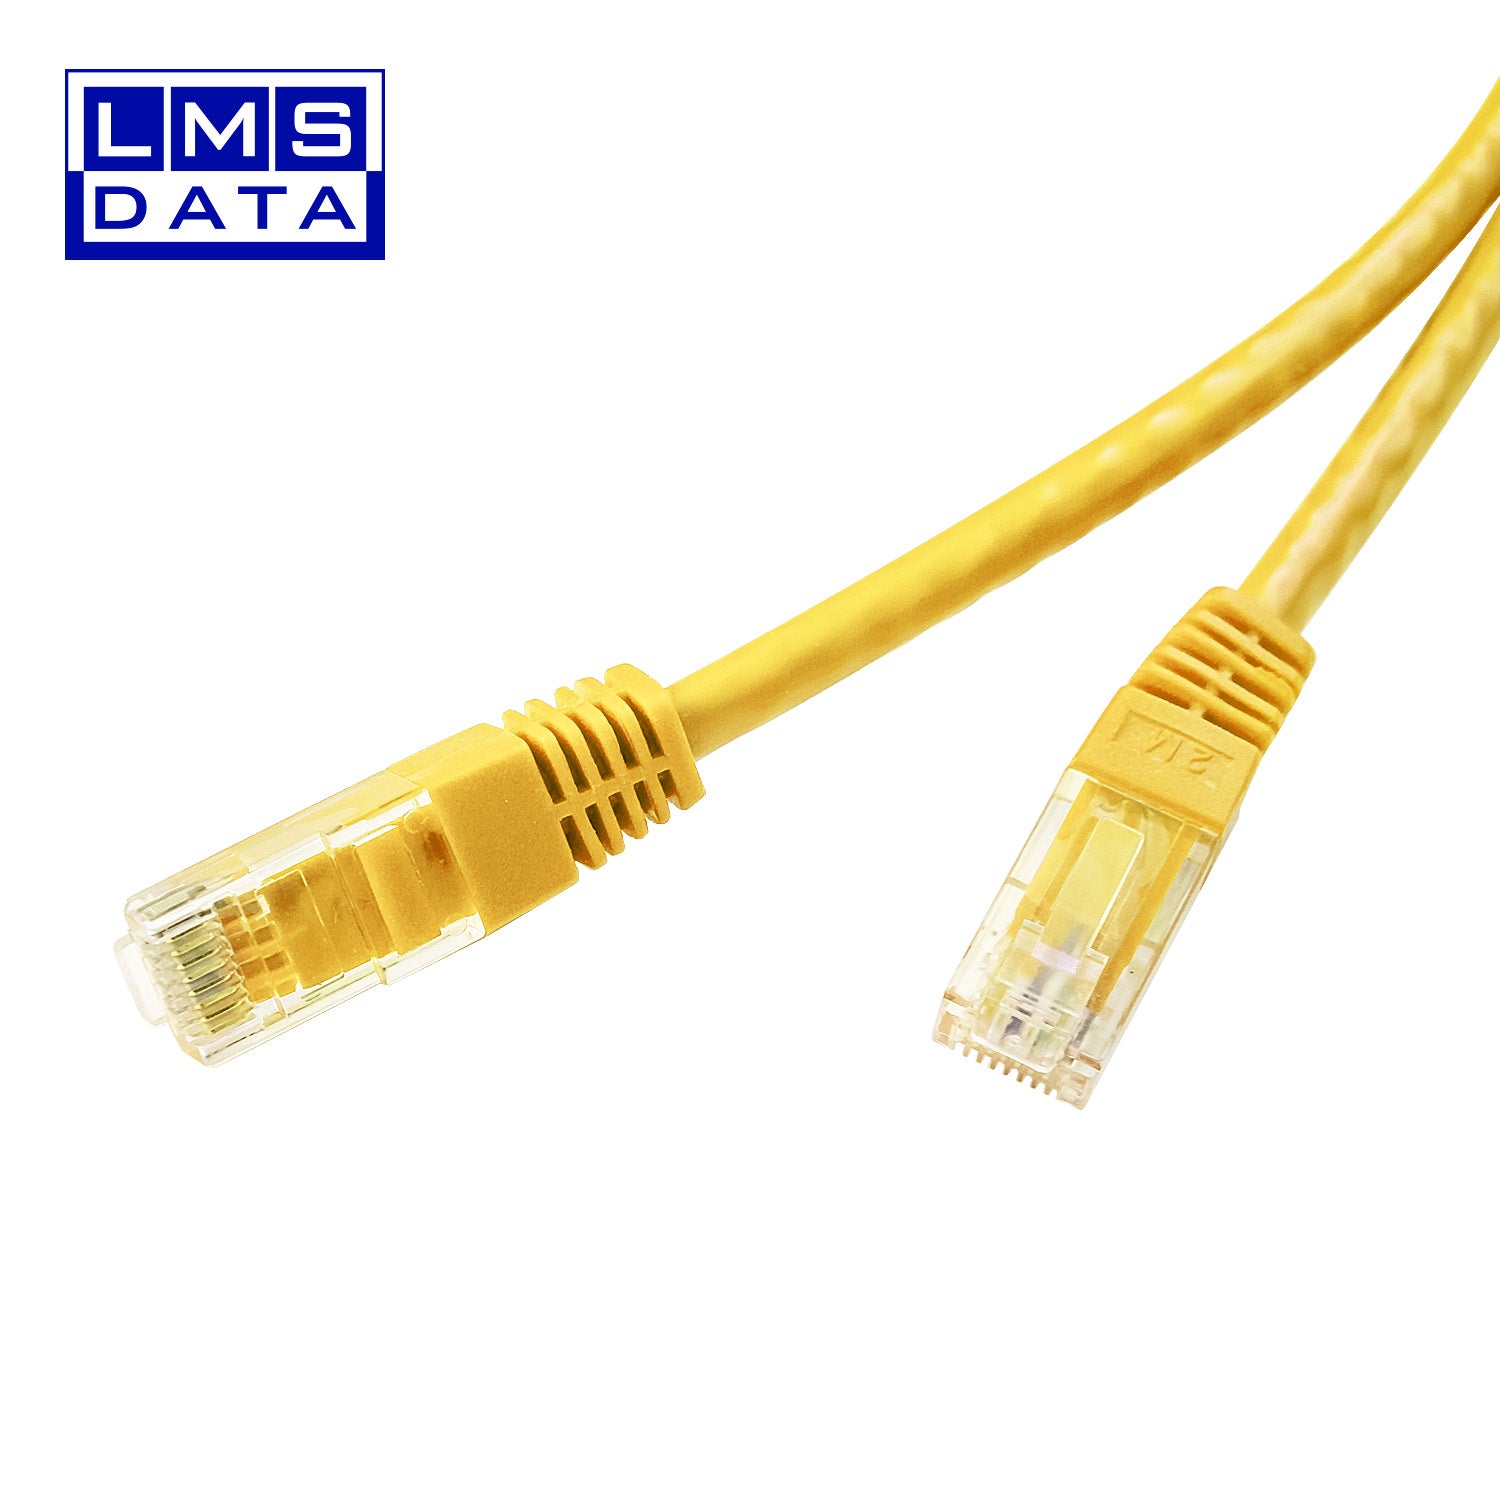 25m LMS Data Ethernet Cat5e RJ45 UTP Patch cable cord, LAN 10/100/1000Mbit/s Cable suitable